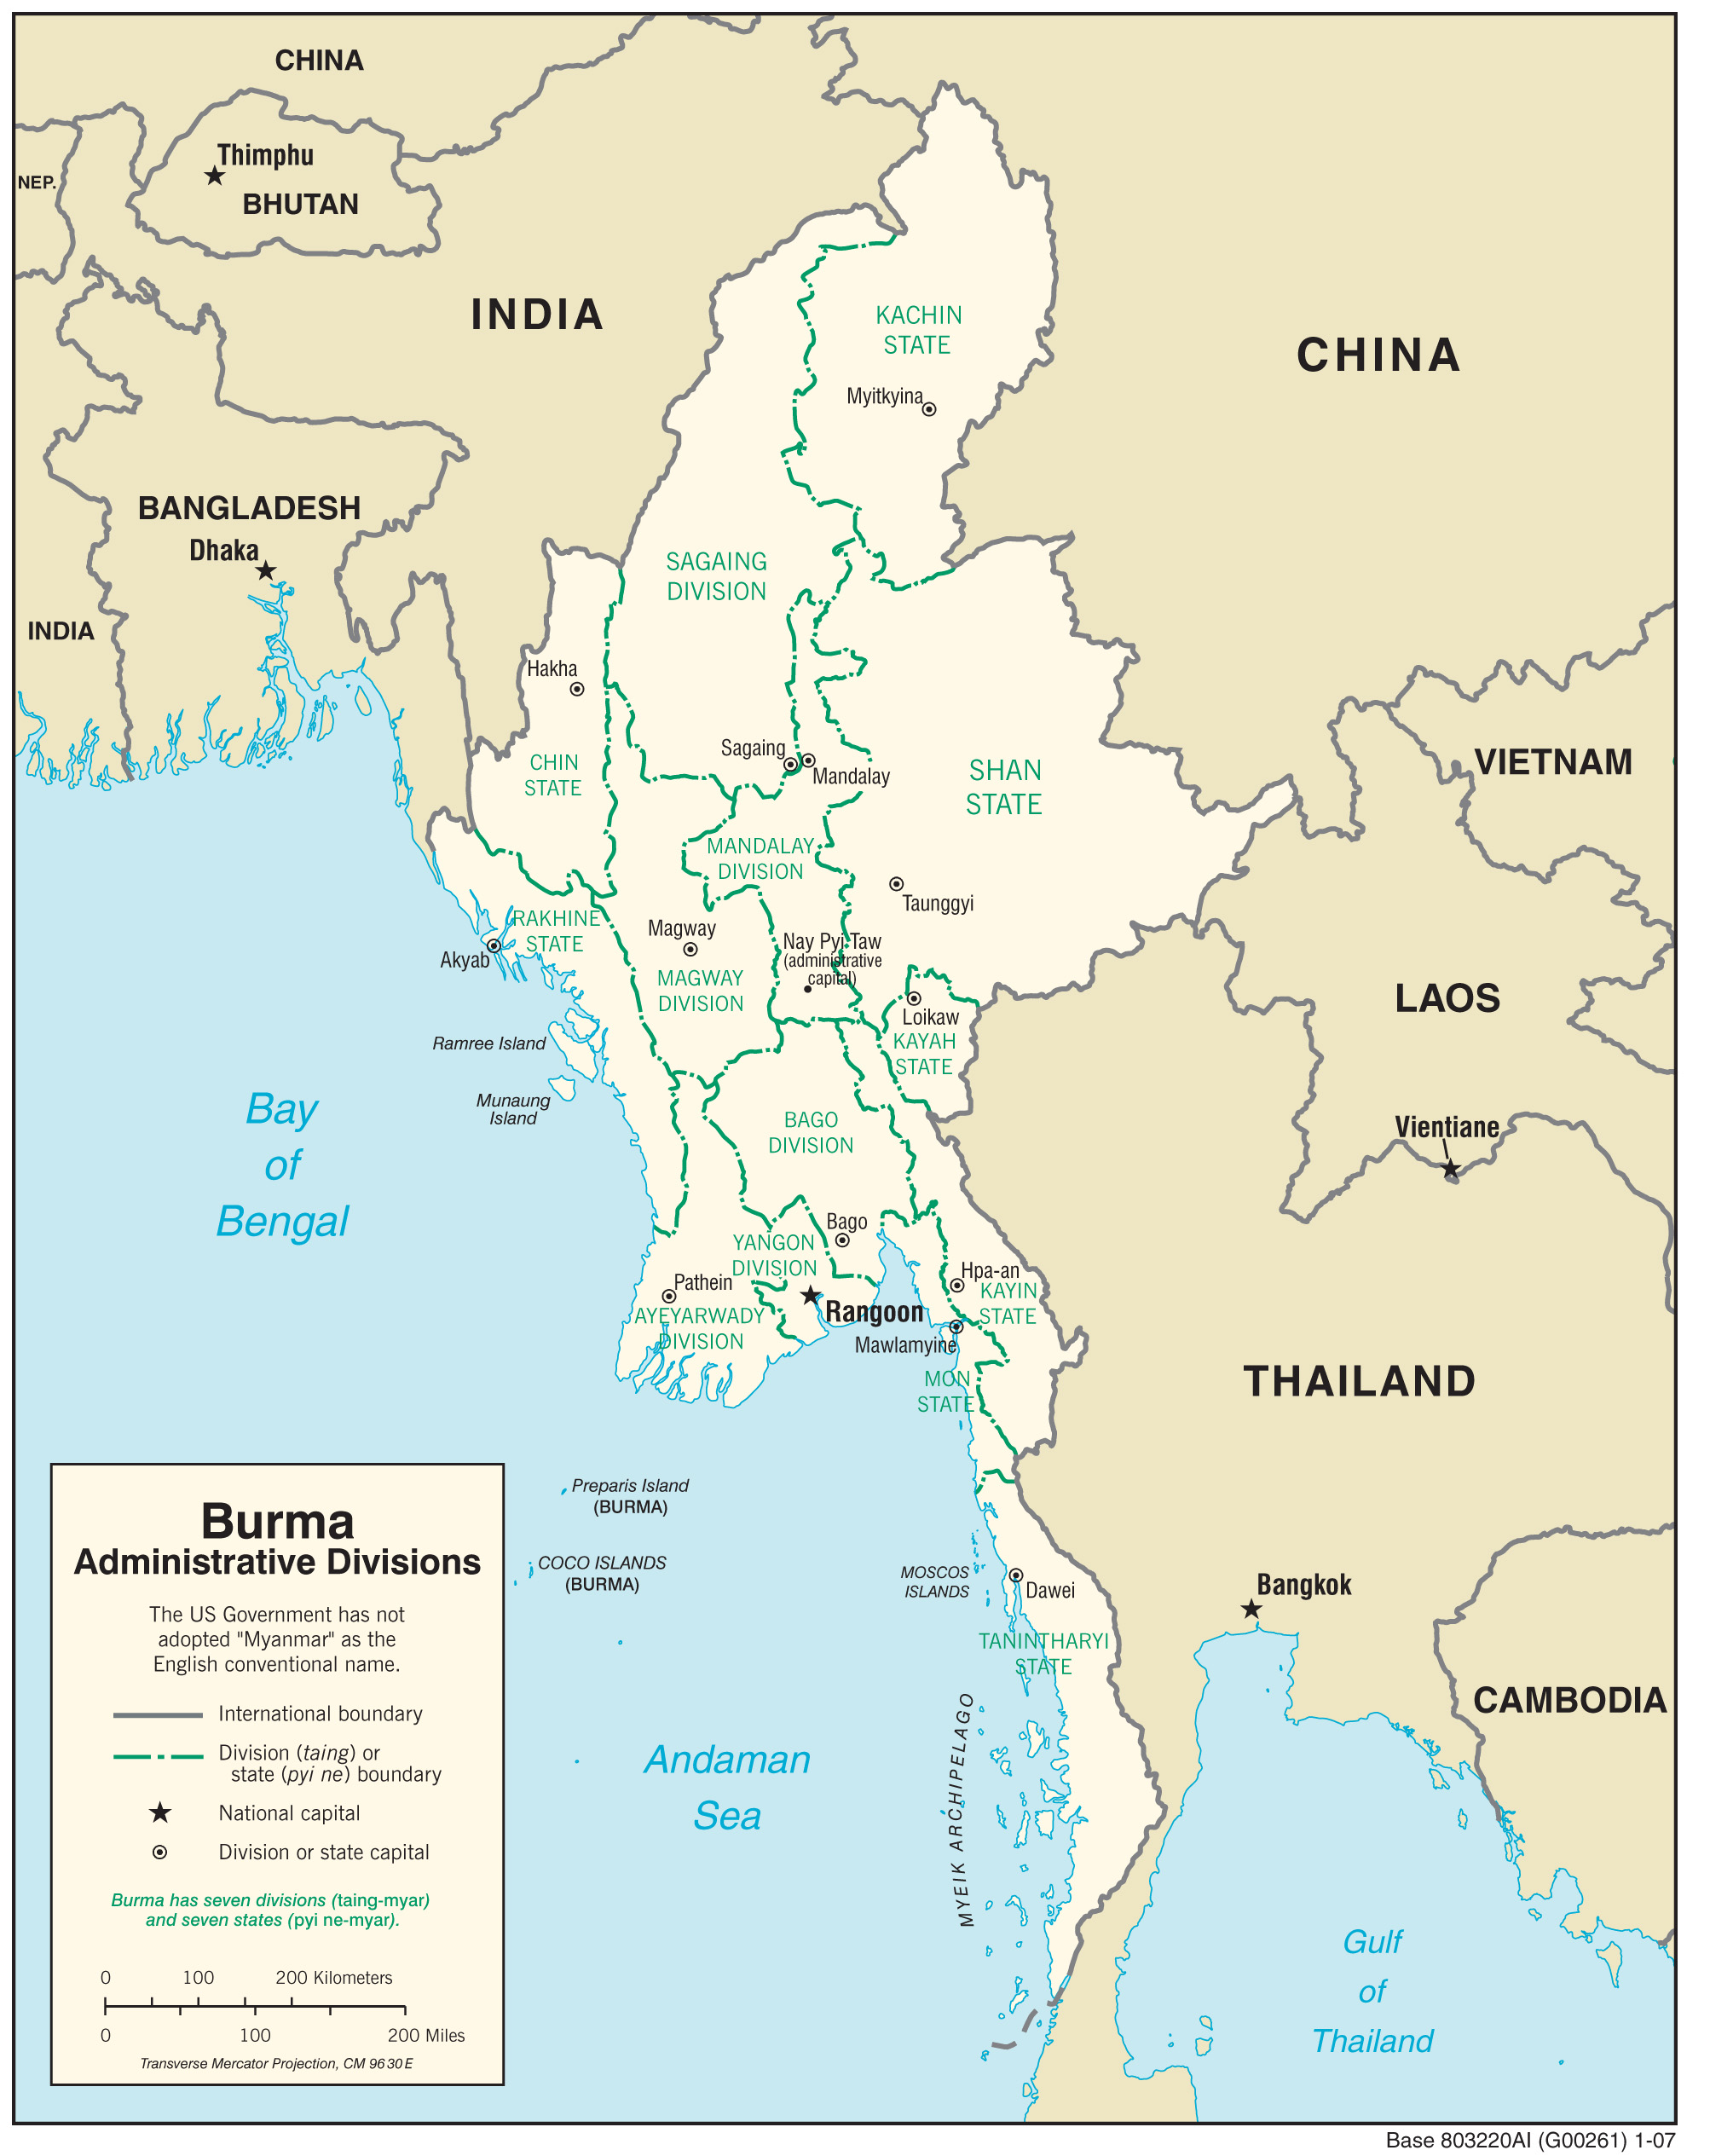 About Burma | Burma Campaign UK
